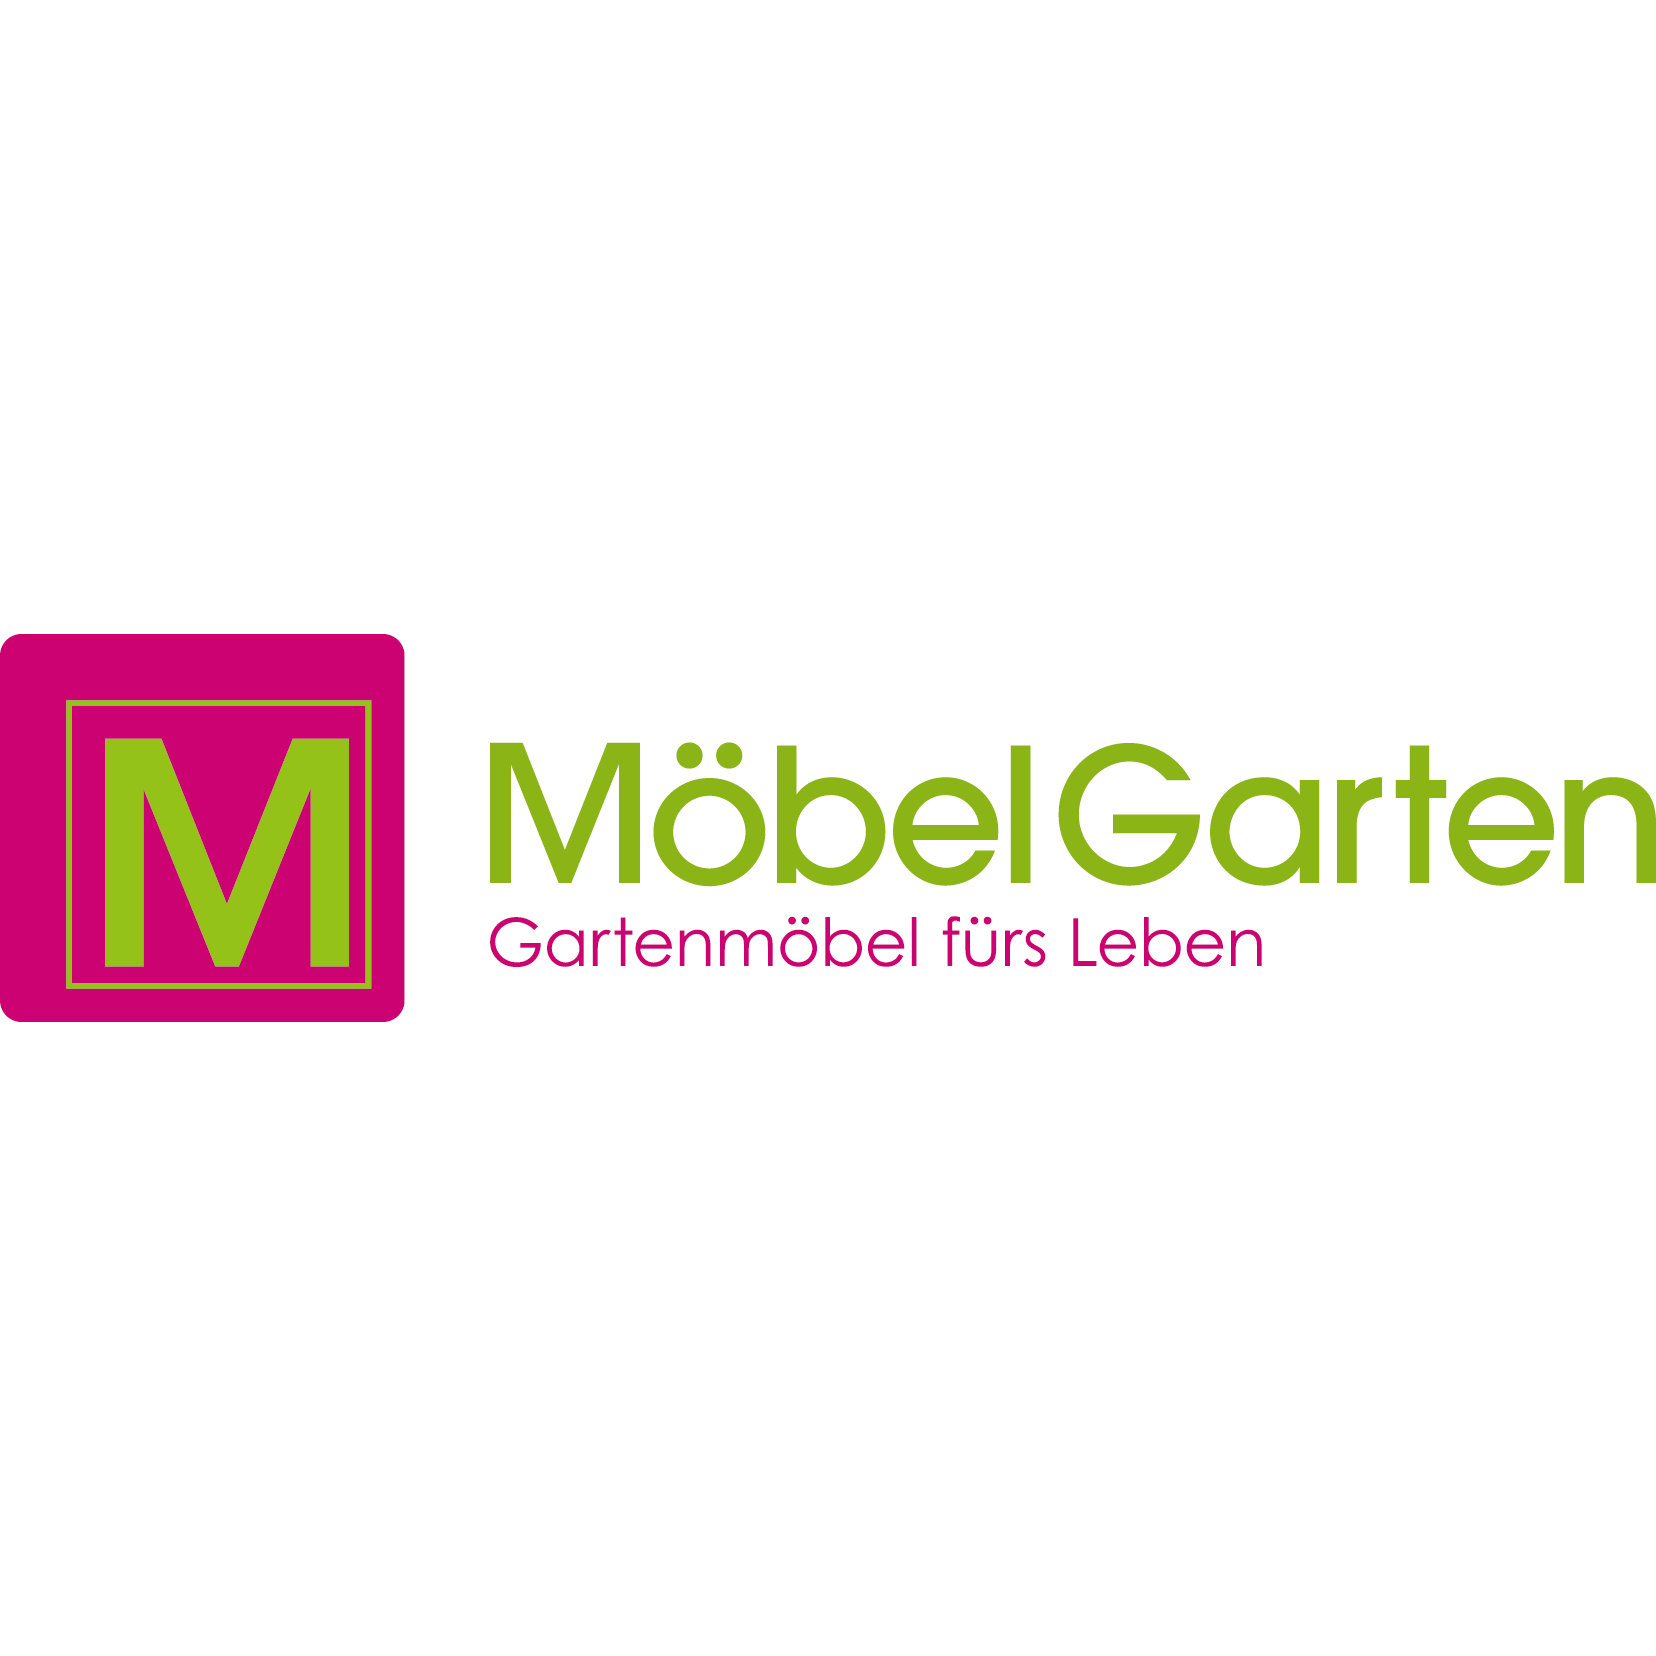 MöbelGarten GmbH - Gartenmöbel fürs Leben  